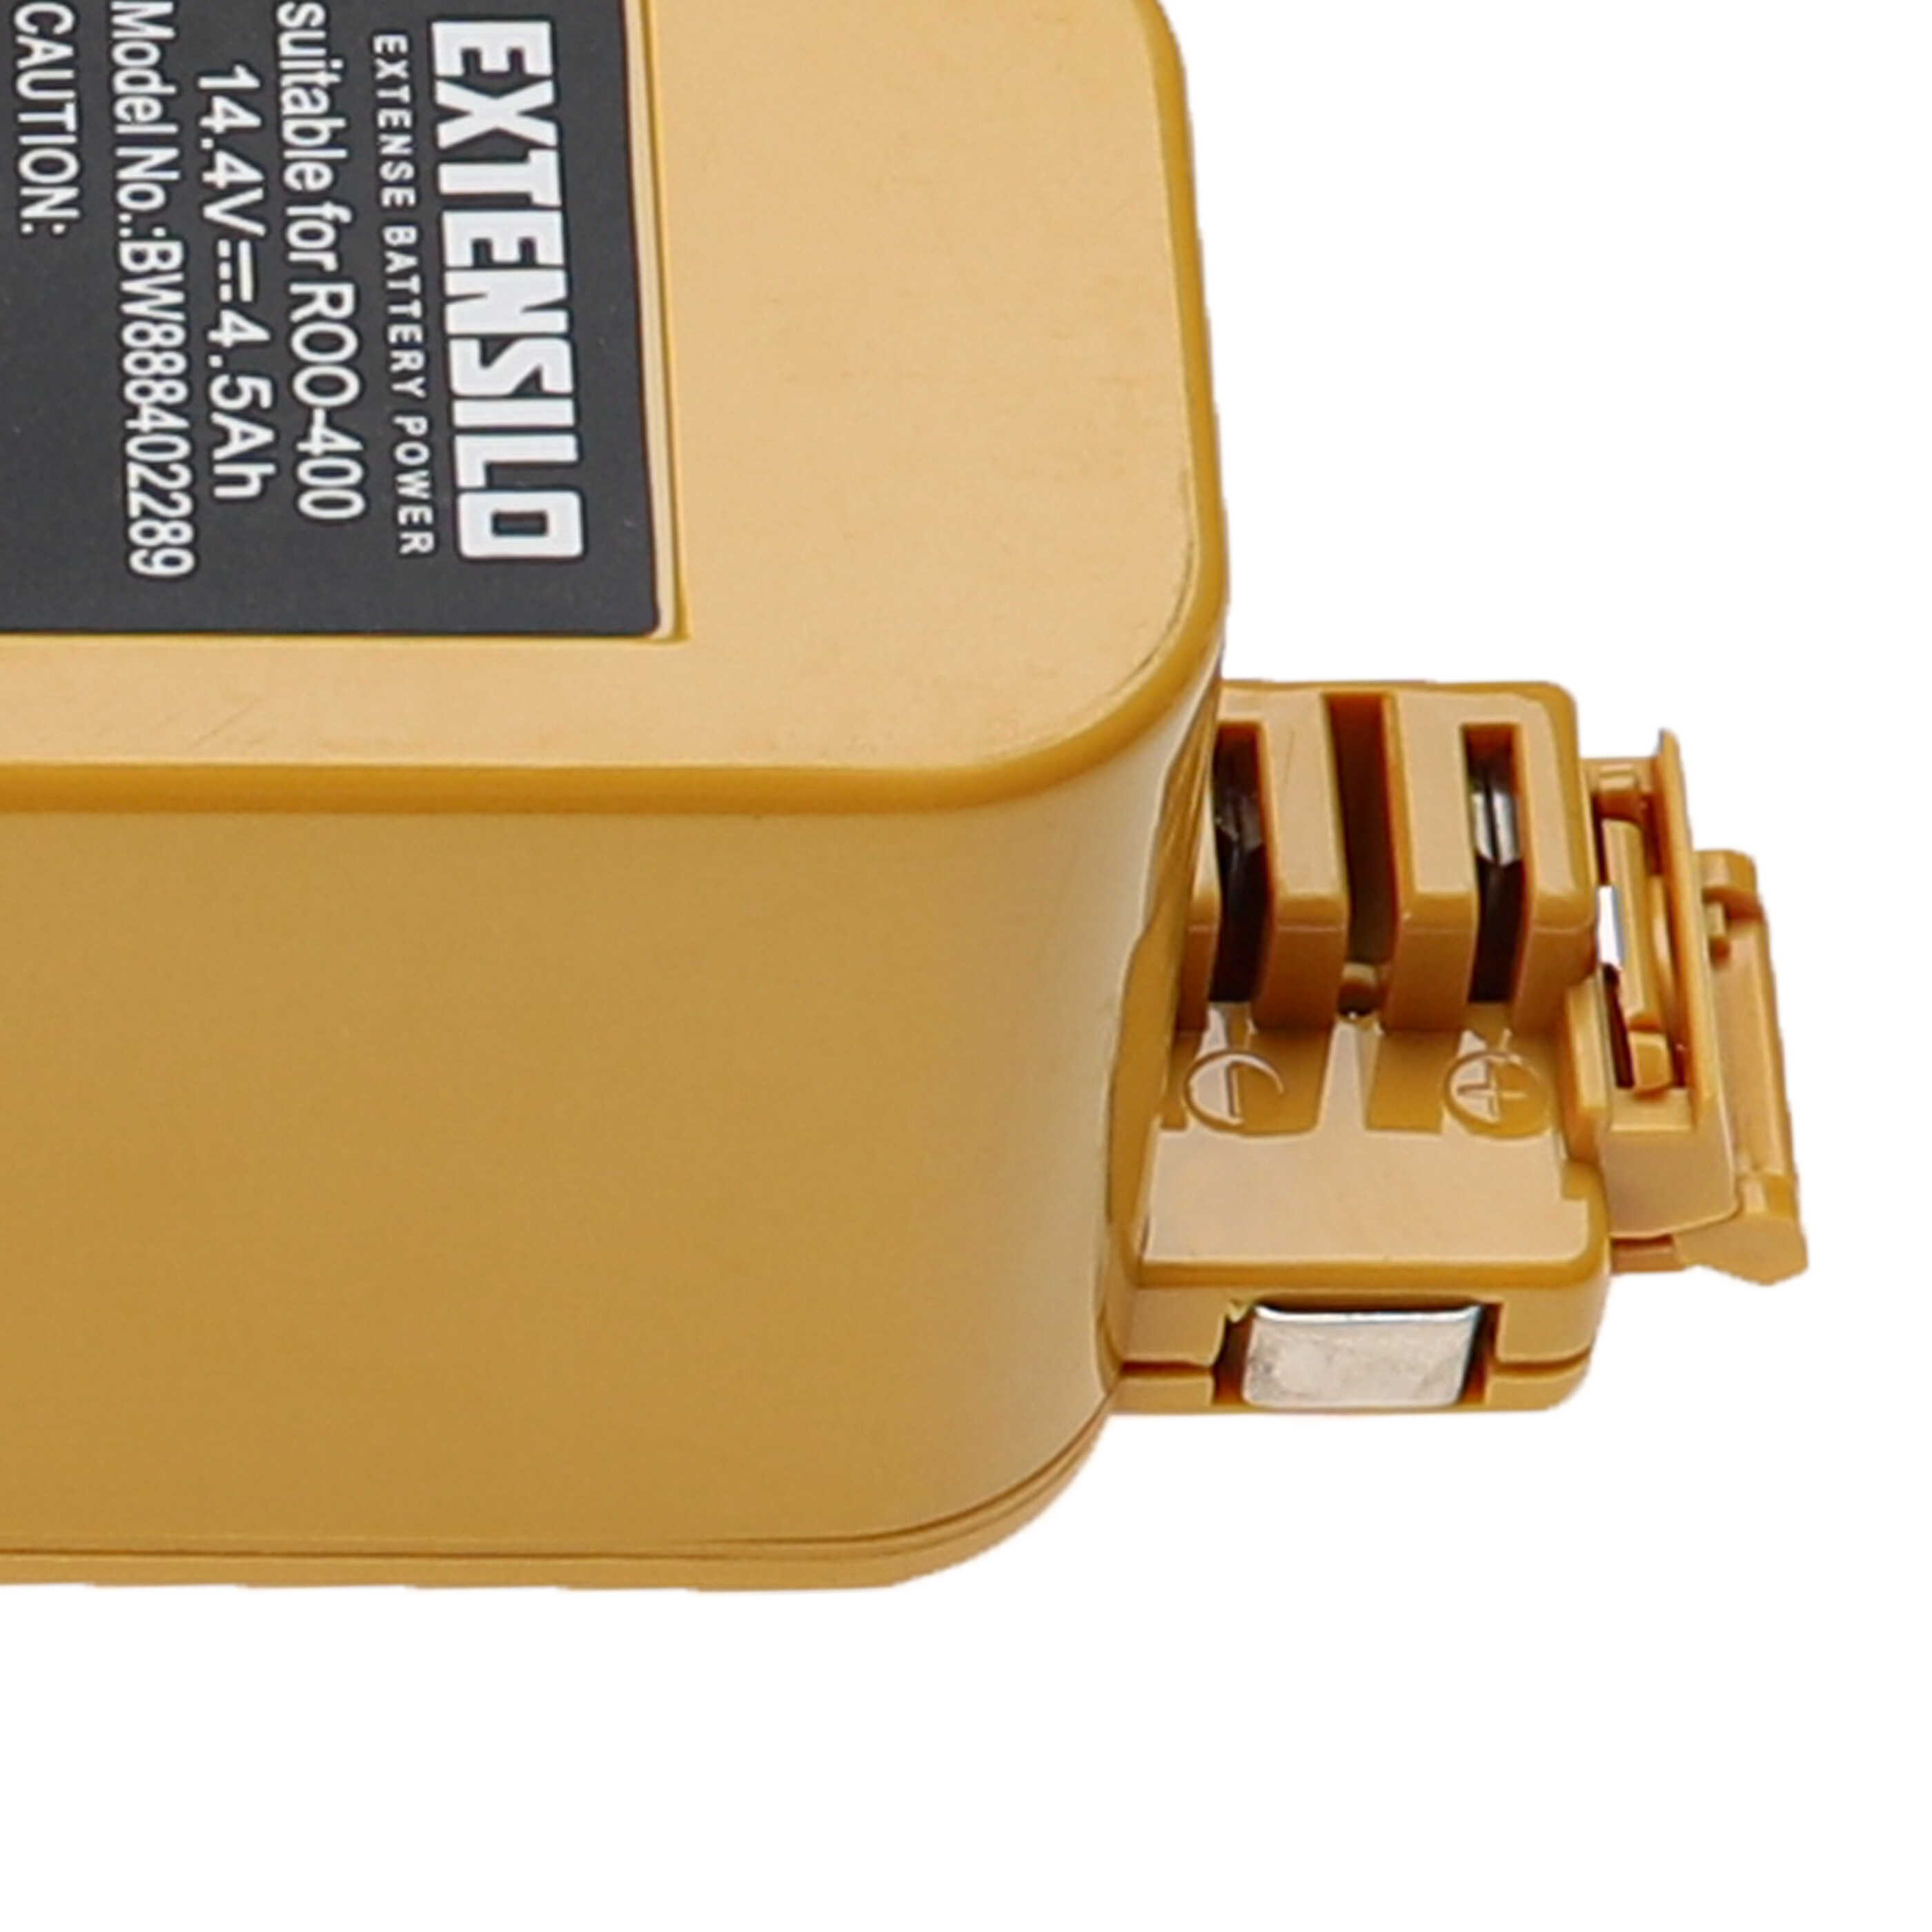 Akumulator do odkurzacza zamiennik APS 4905, NC-3493-919, 11700, 17373 - 4500 mAh 14,4 V NiMH, żółty